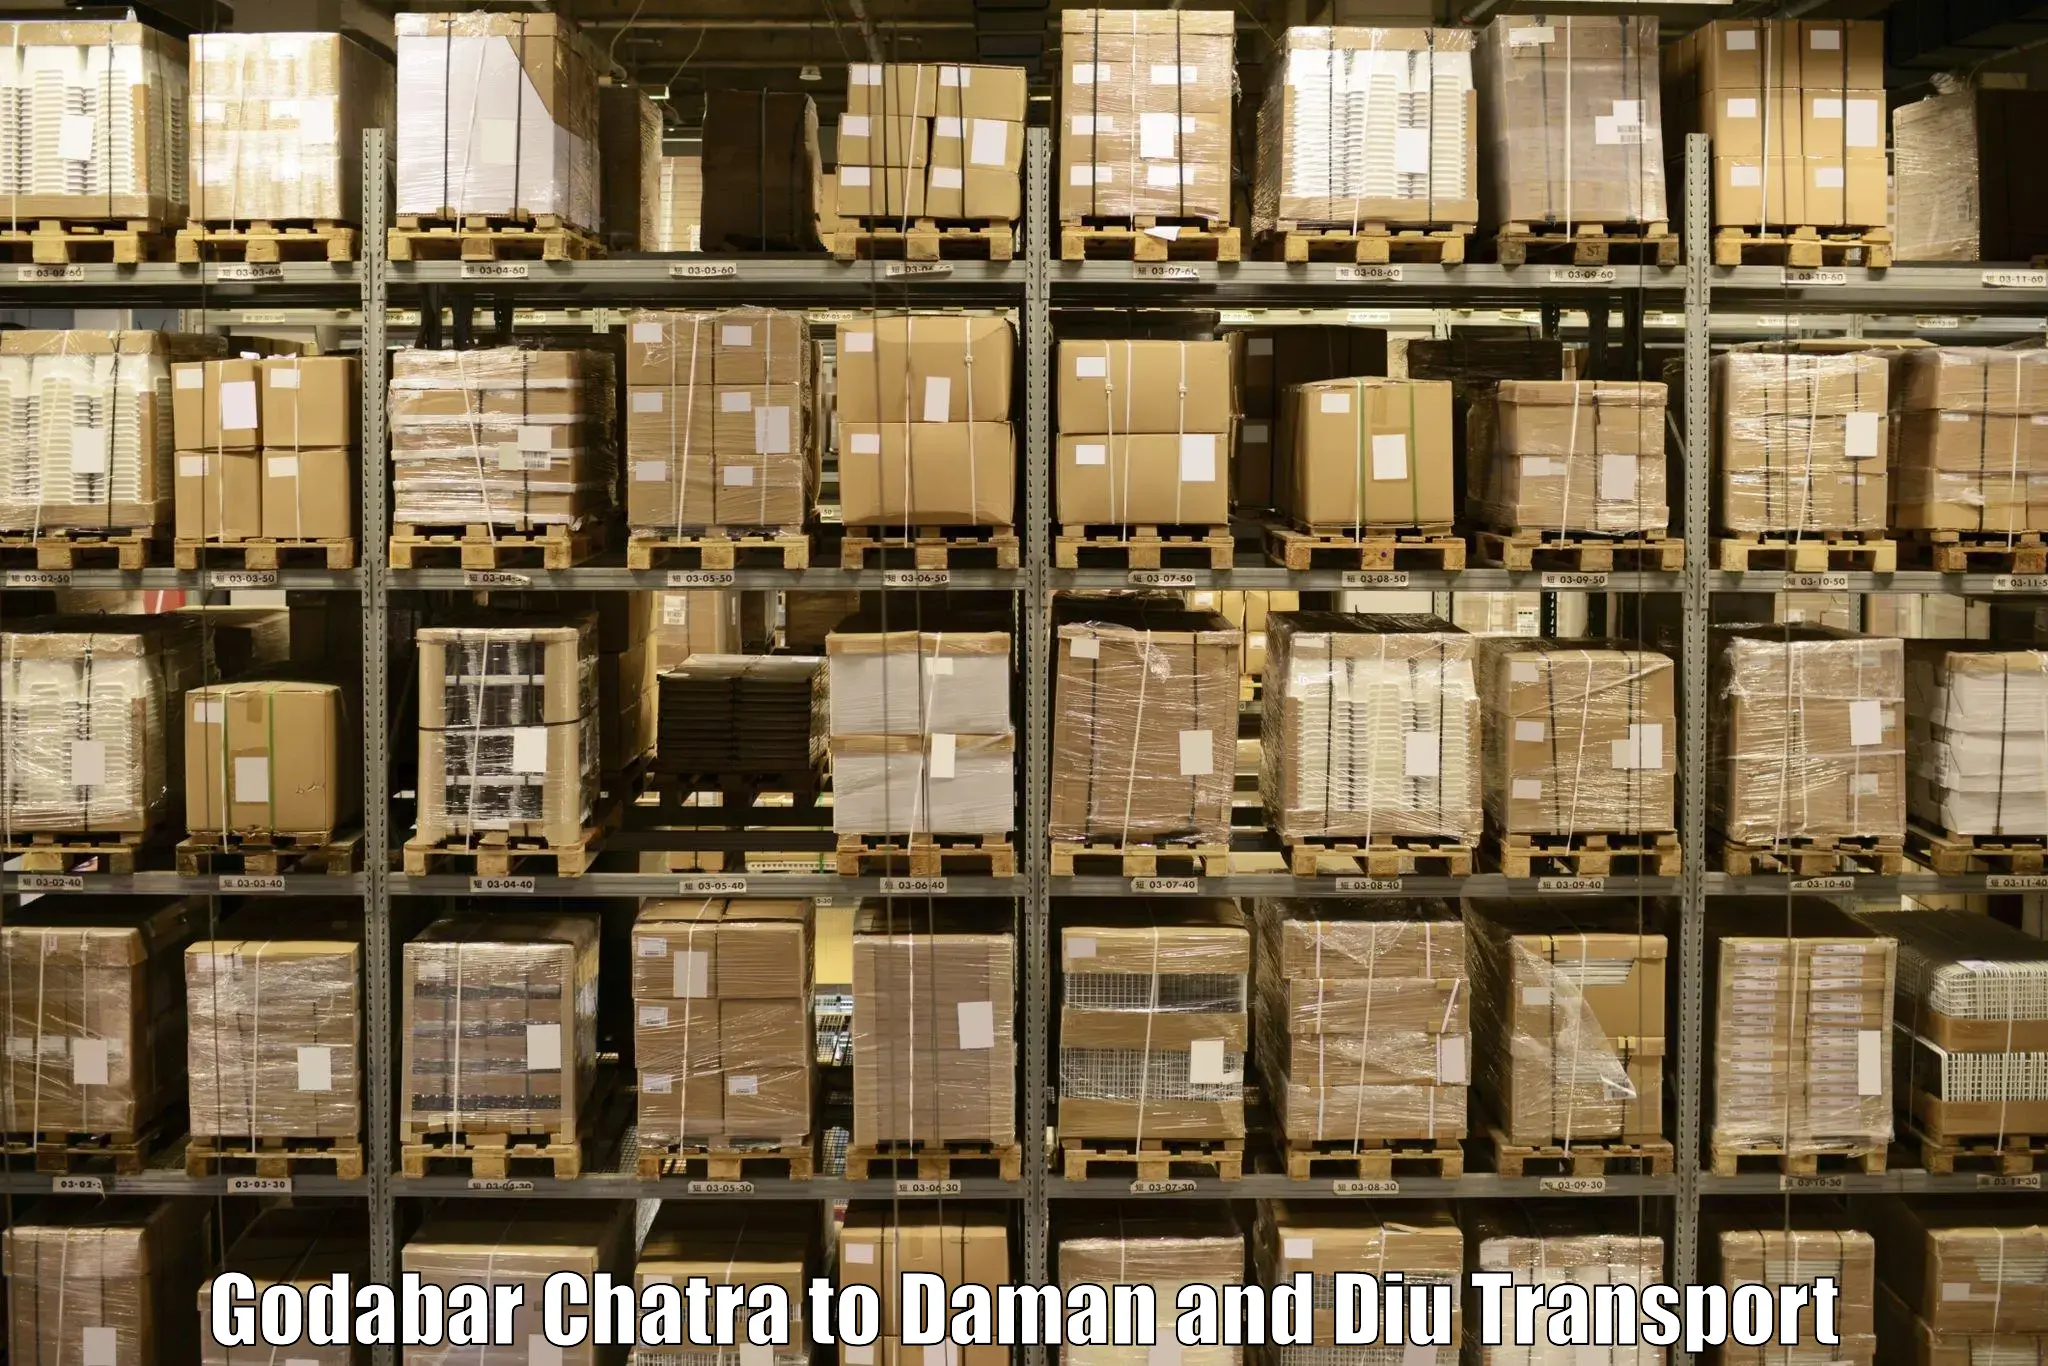 Shipping partner Godabar Chatra to Daman and Diu